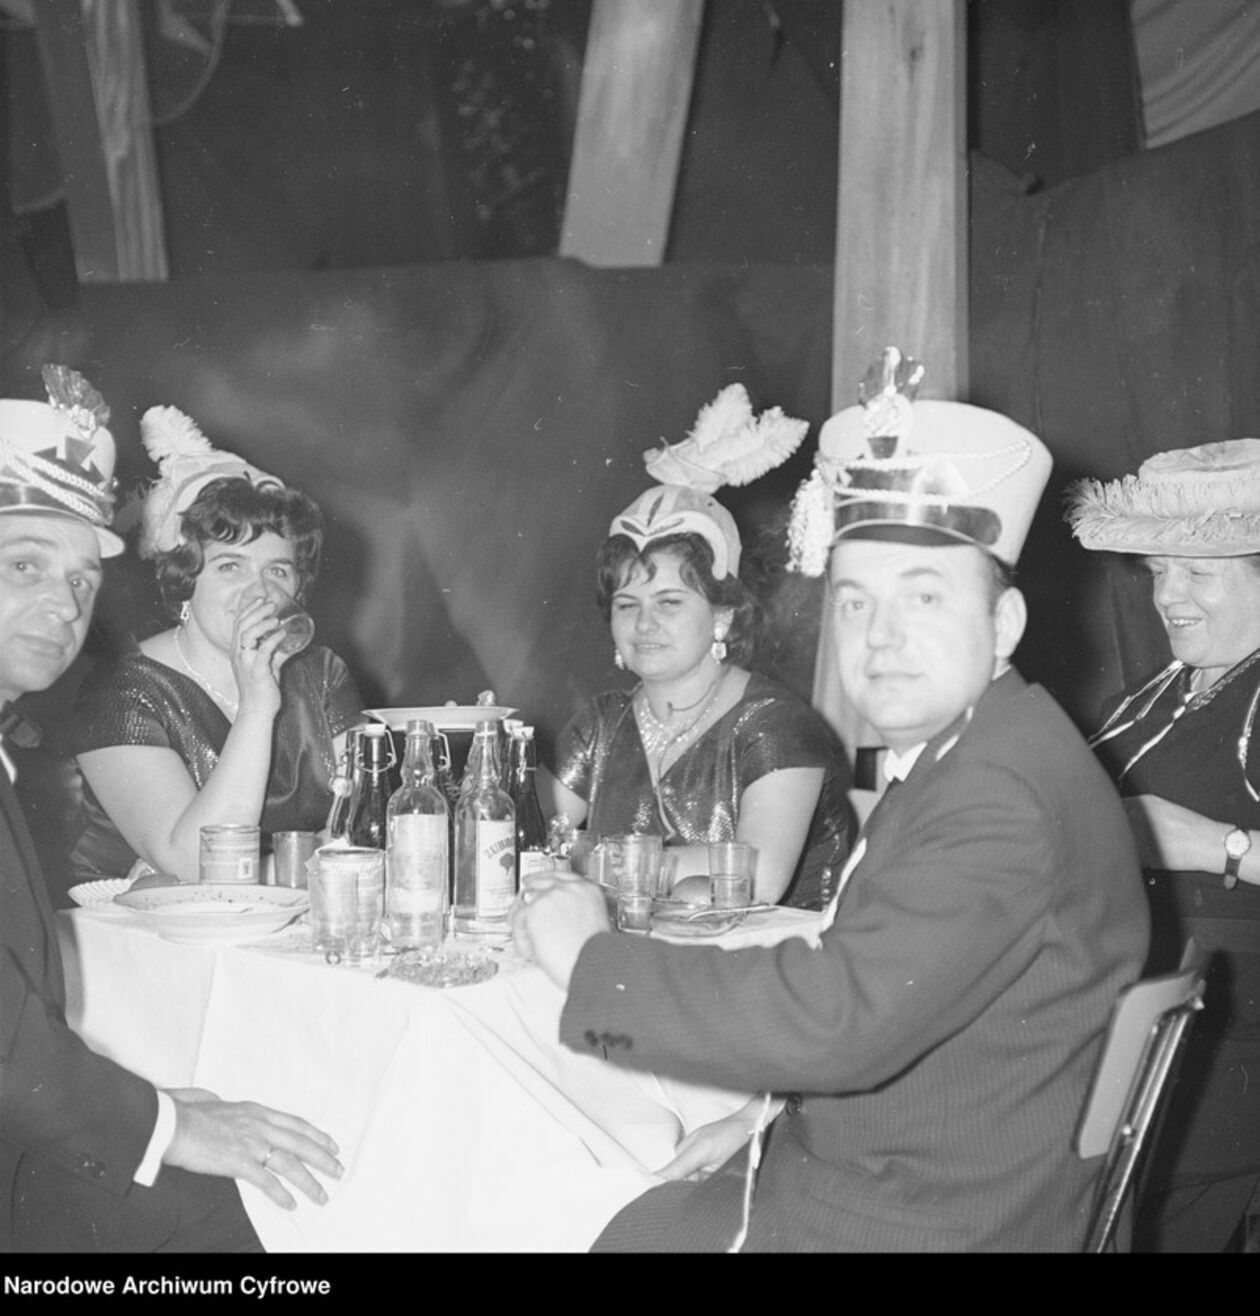  <p>Goście w przebraniach siedzą przy stoliku lata 60-te</p>